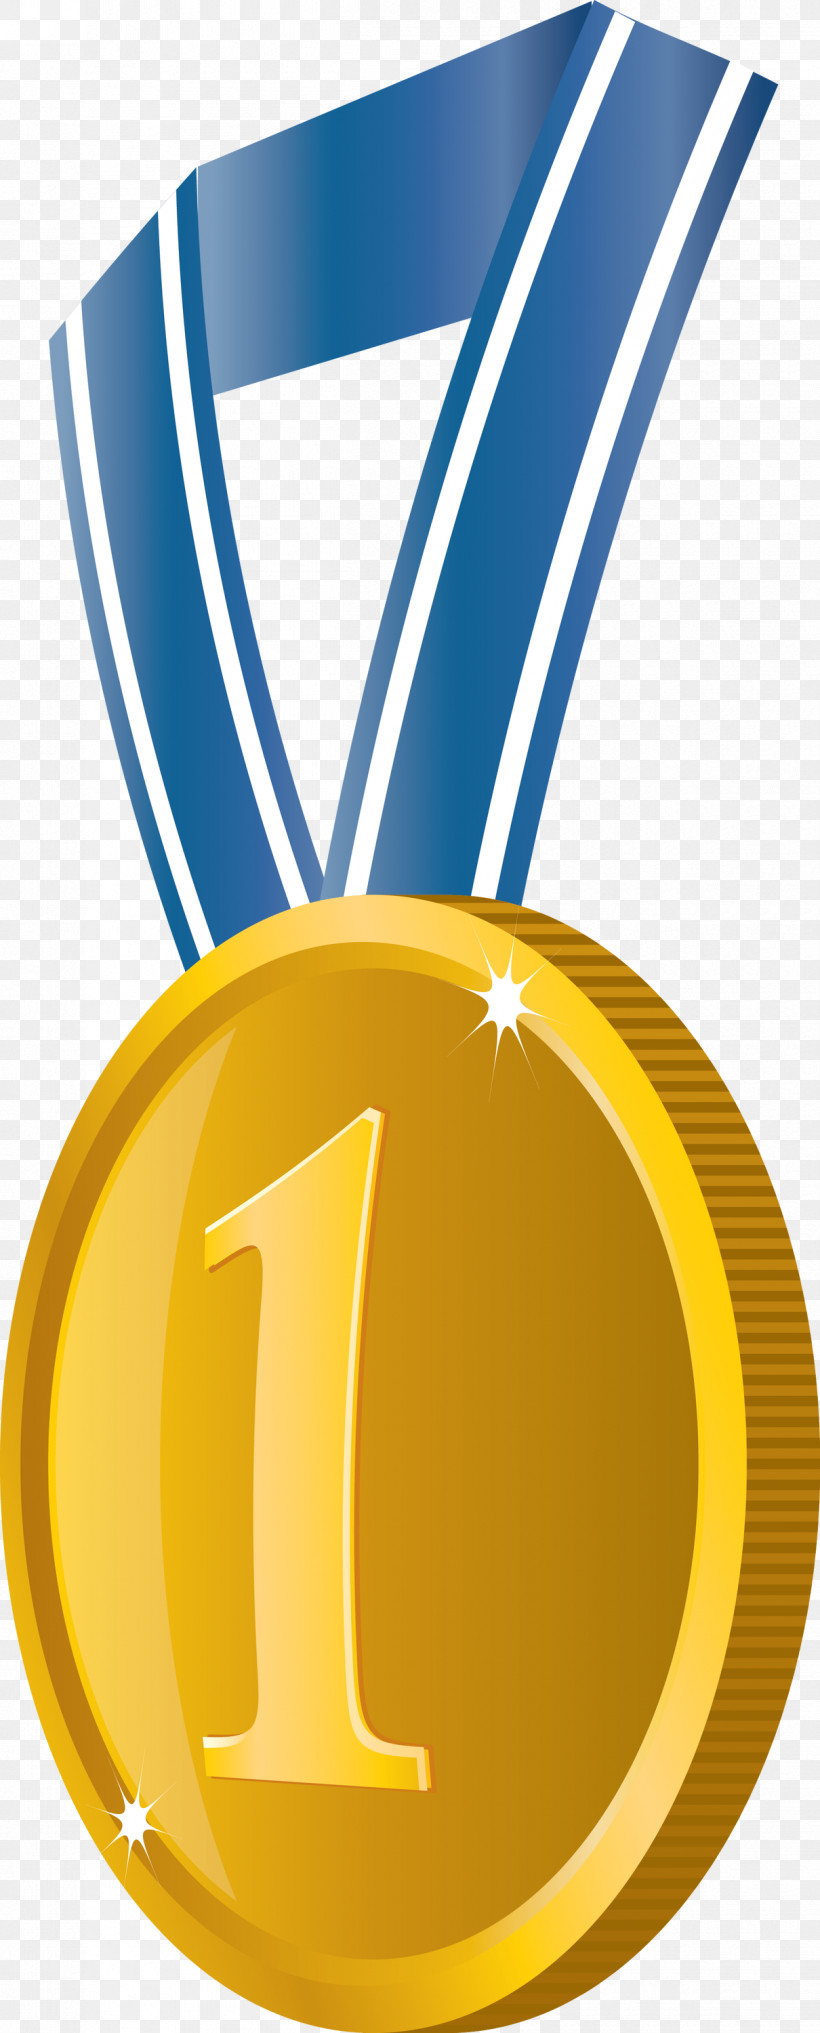 Gold Badge No 1 Badge Award Gold Badge, PNG, 1210x3000px, Gold Badge, Award, Award Gold Badge, Gold, Gold Medal Download Free